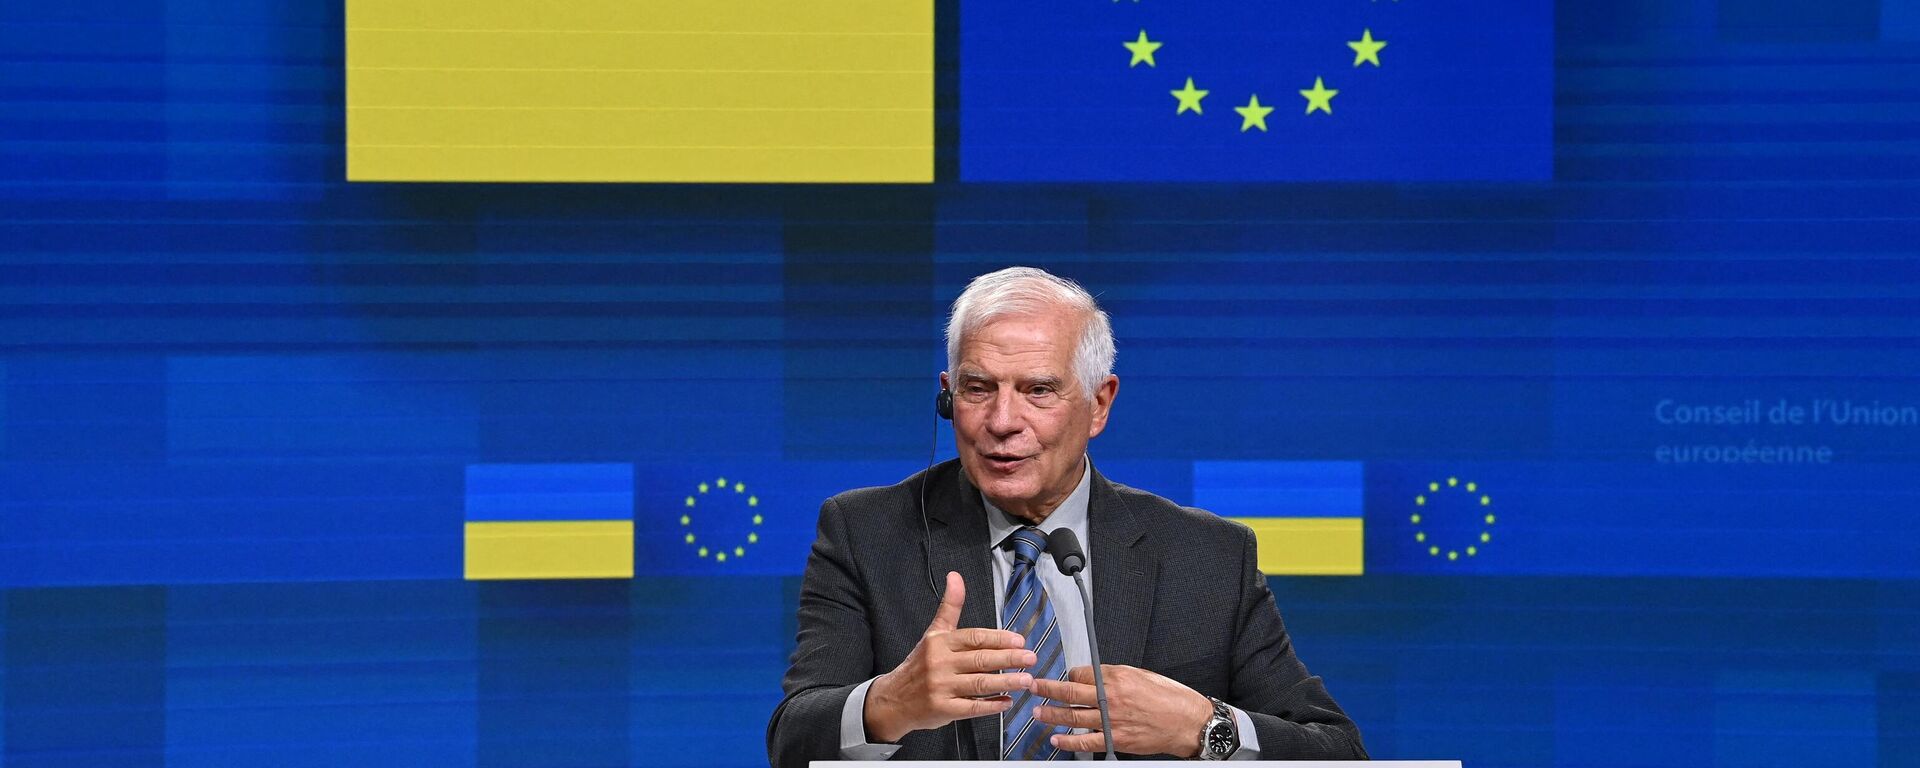 Josep Borrell, chefe das Relações Exteriores da União Europeia, fala durante coletiva de imprensa na sede do bloco em Bruxelas, Bélgica, 5 de setembro de 2022 - Sputnik Brasil, 1920, 05.09.2022